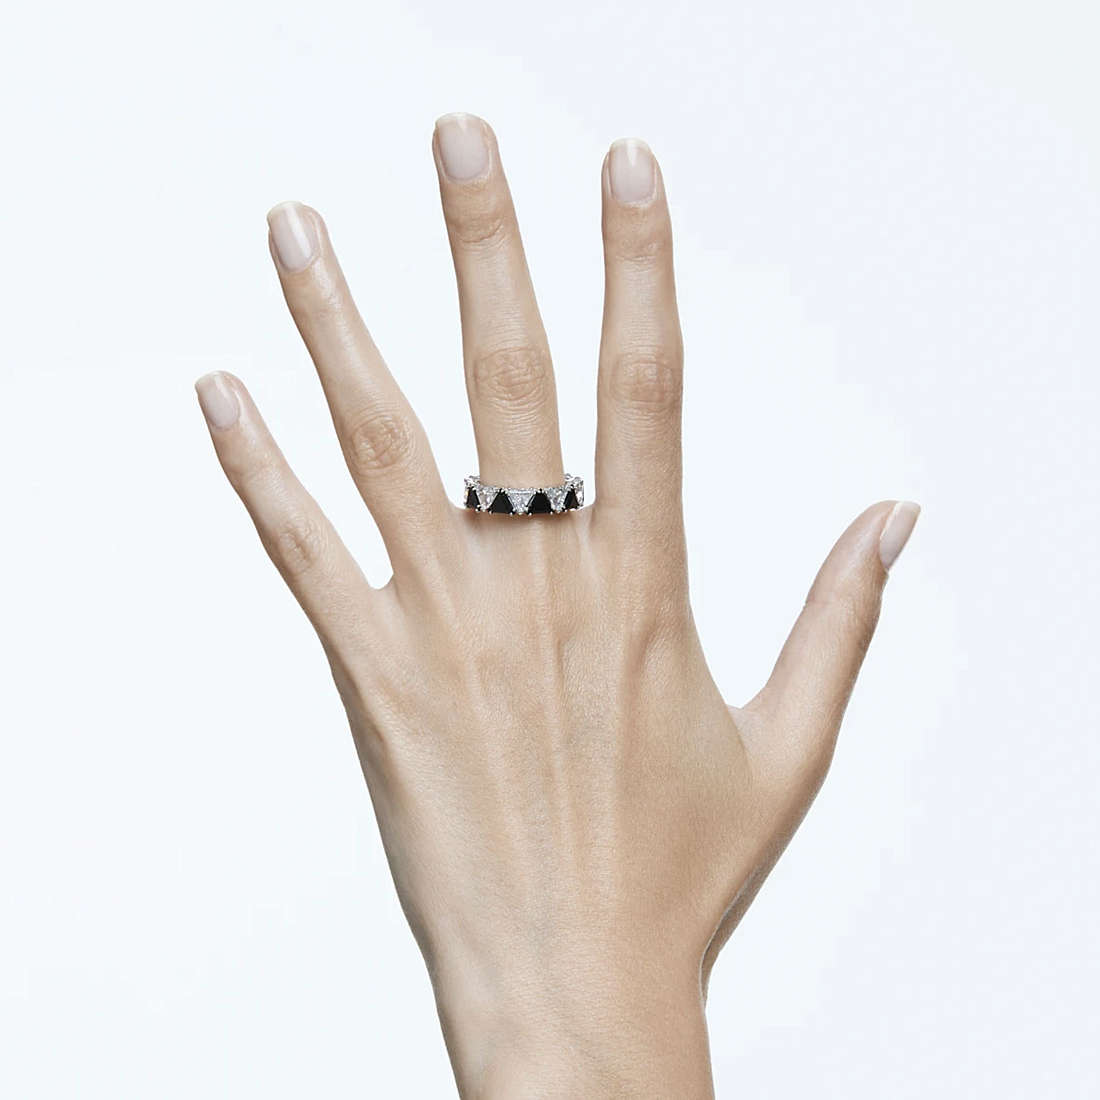 Swarovski rings Ortyx woman 5619153 wearing